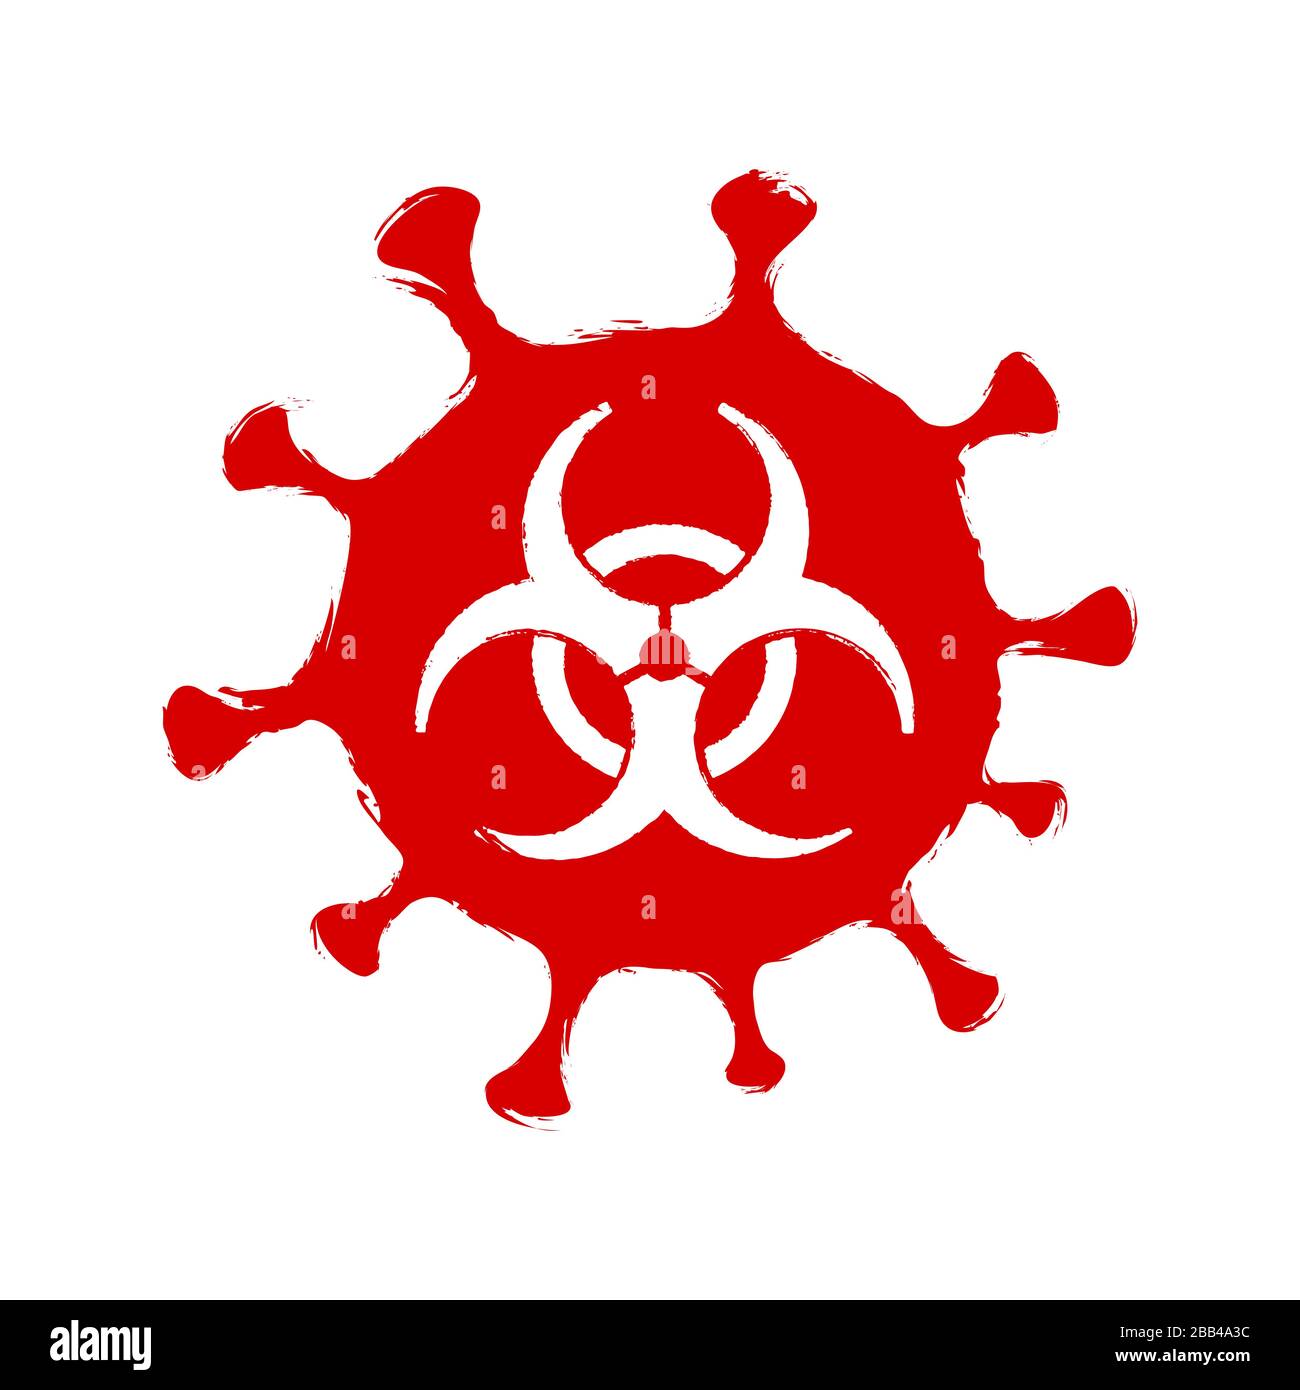 Símbolo grunge de coronavirus. Señal de advertencia de peligro biológico Covid-19. Símbolo de epidemia y pandemia. Vector aislado. Ilustración del Vector